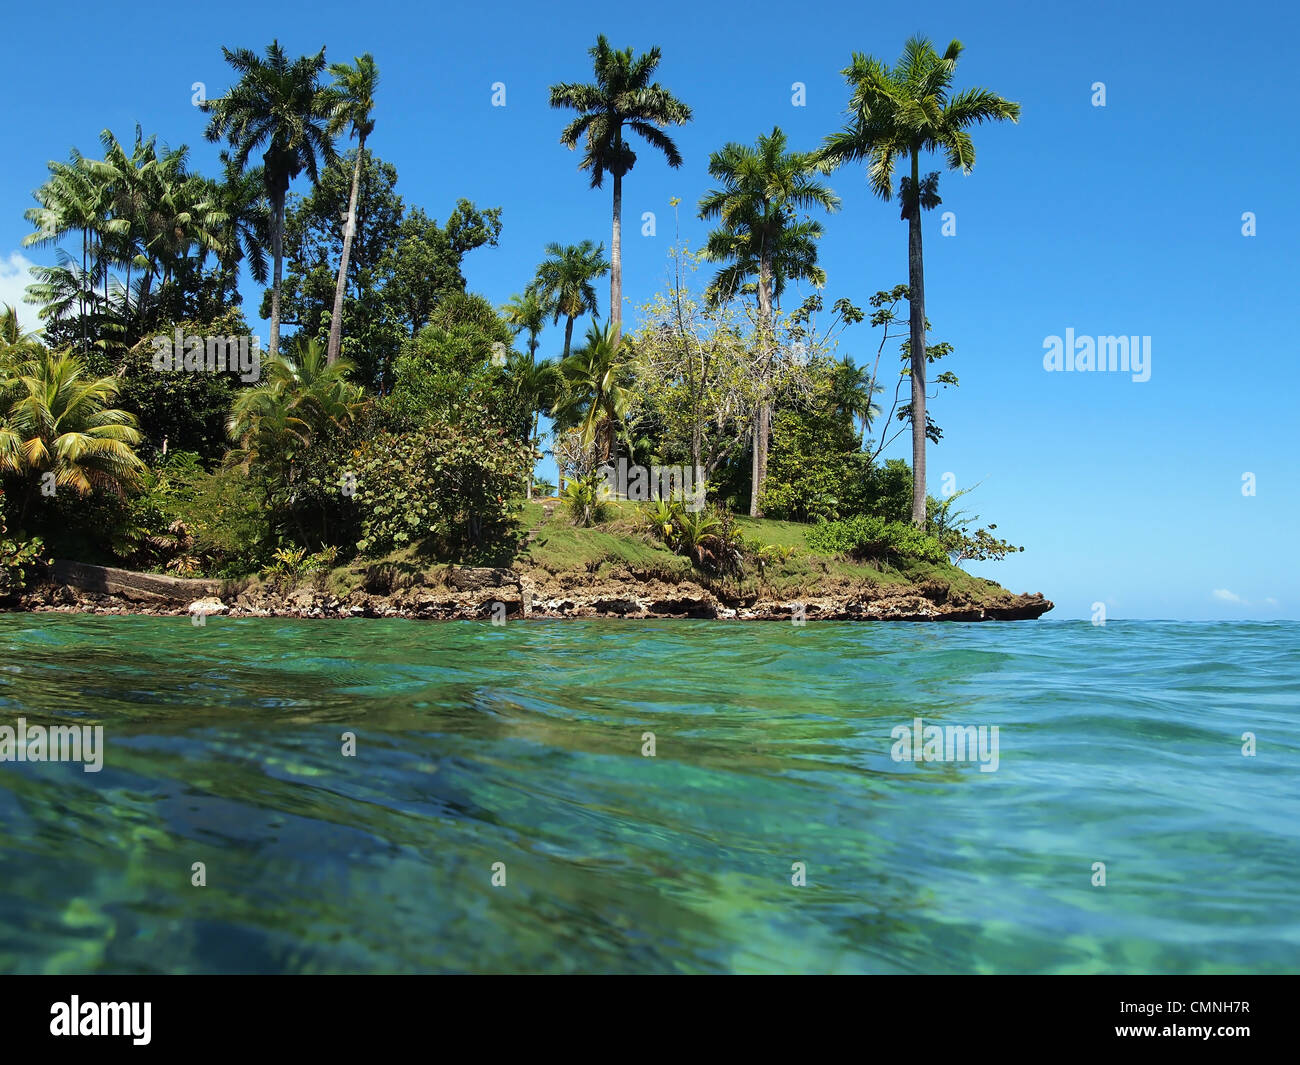 Isola dei caraibi con bellissima vegetazione tropicale visto dalla superficie dell'acqua Foto Stock